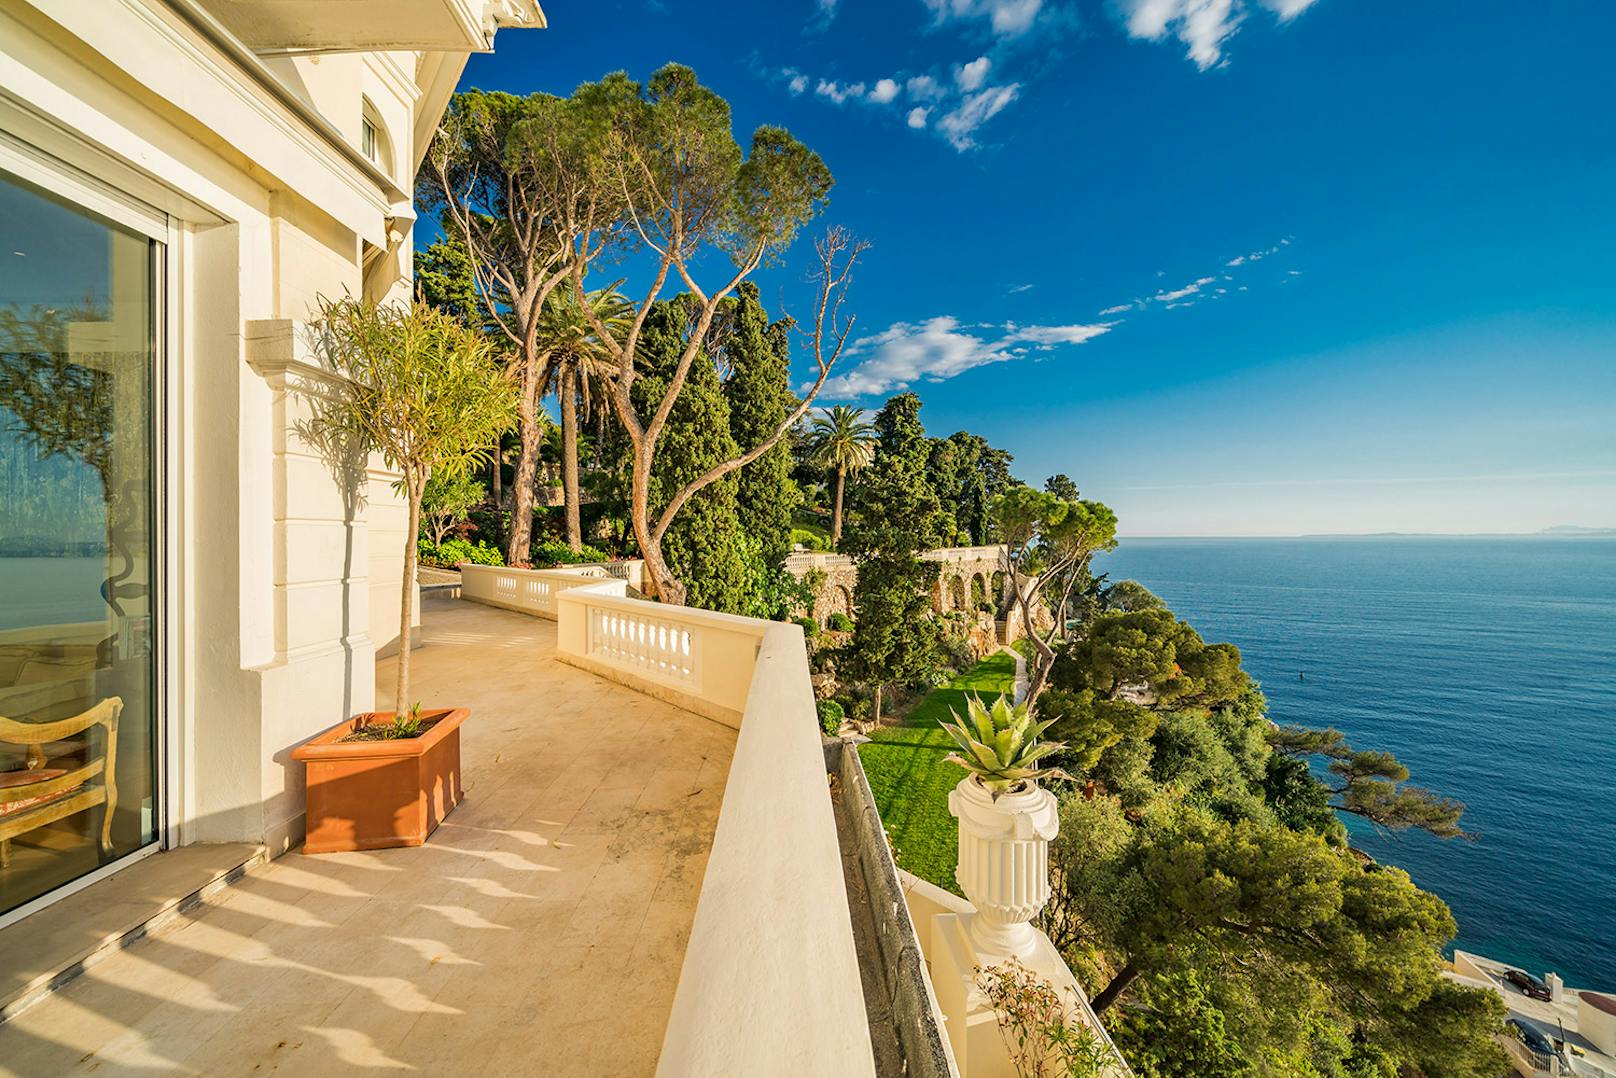 Wen es noch interessiert: Das Haus liegt genau zwischen Cannes und&nbsp;Monaco. Dem Partyleben muss also keinesfalls abgeschworen werden.